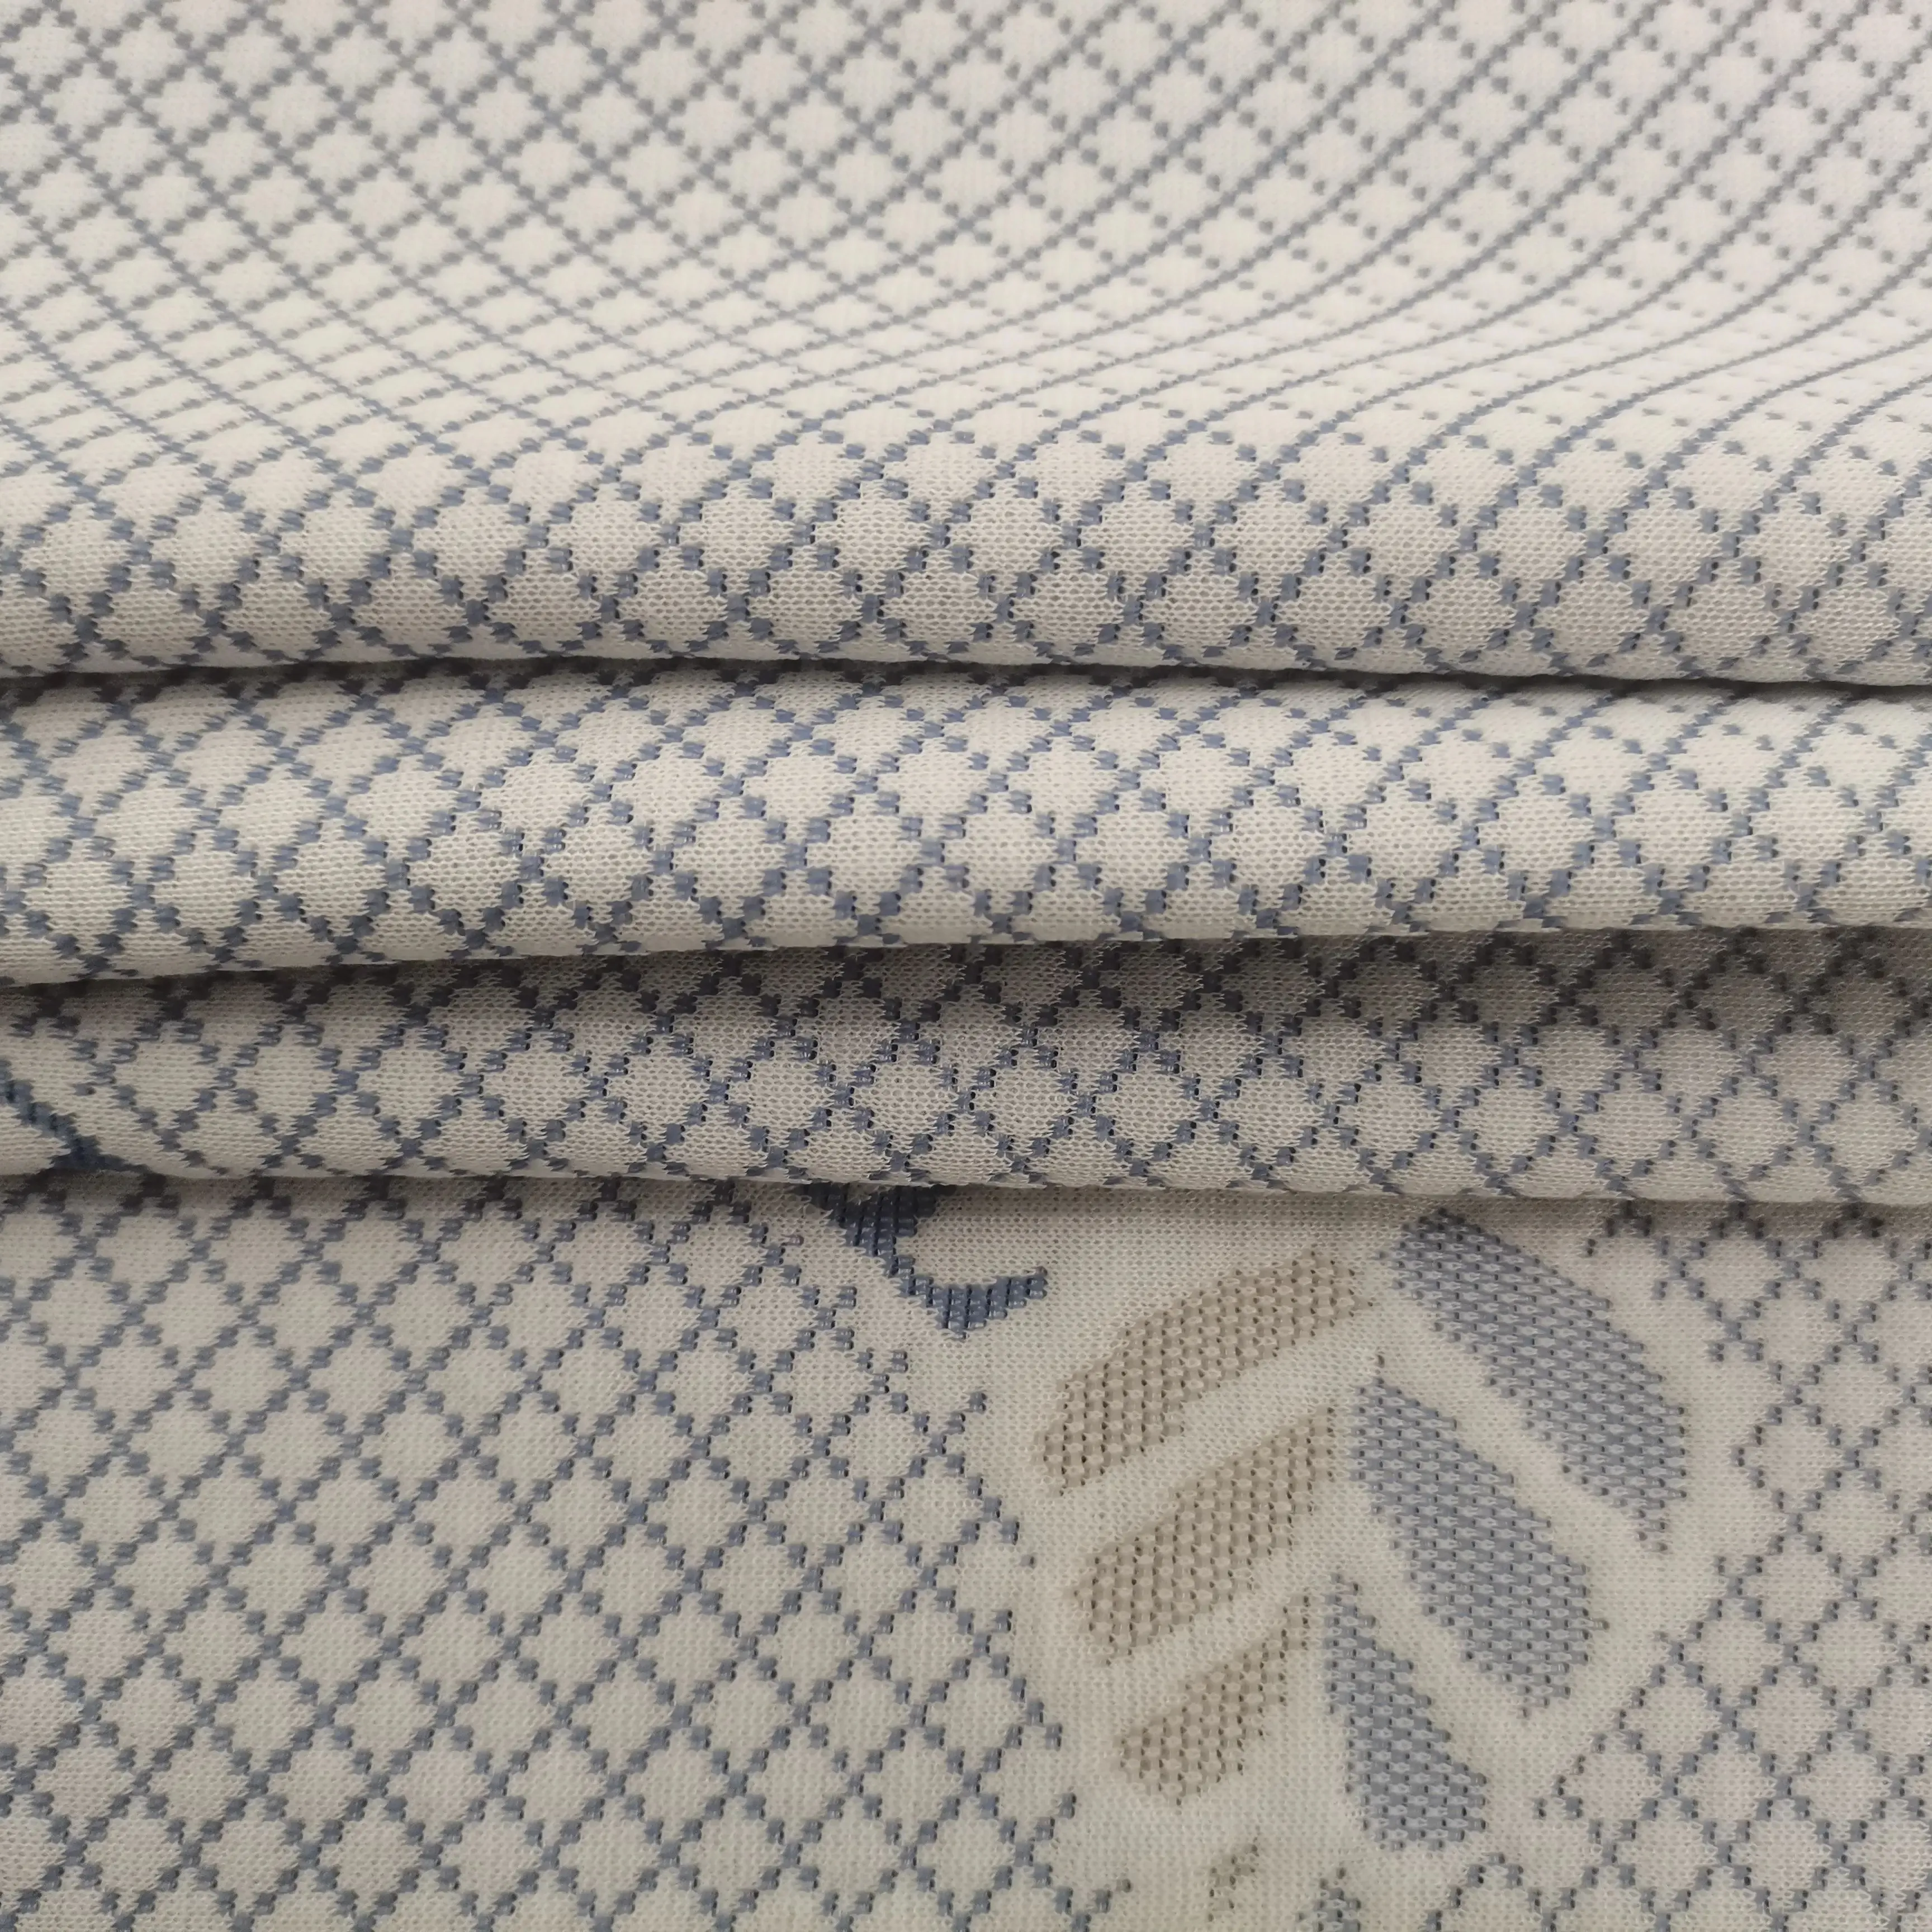 Ev için yeni tasarım Polyester atkı örme mikrofiber nefes örme kumaşlar